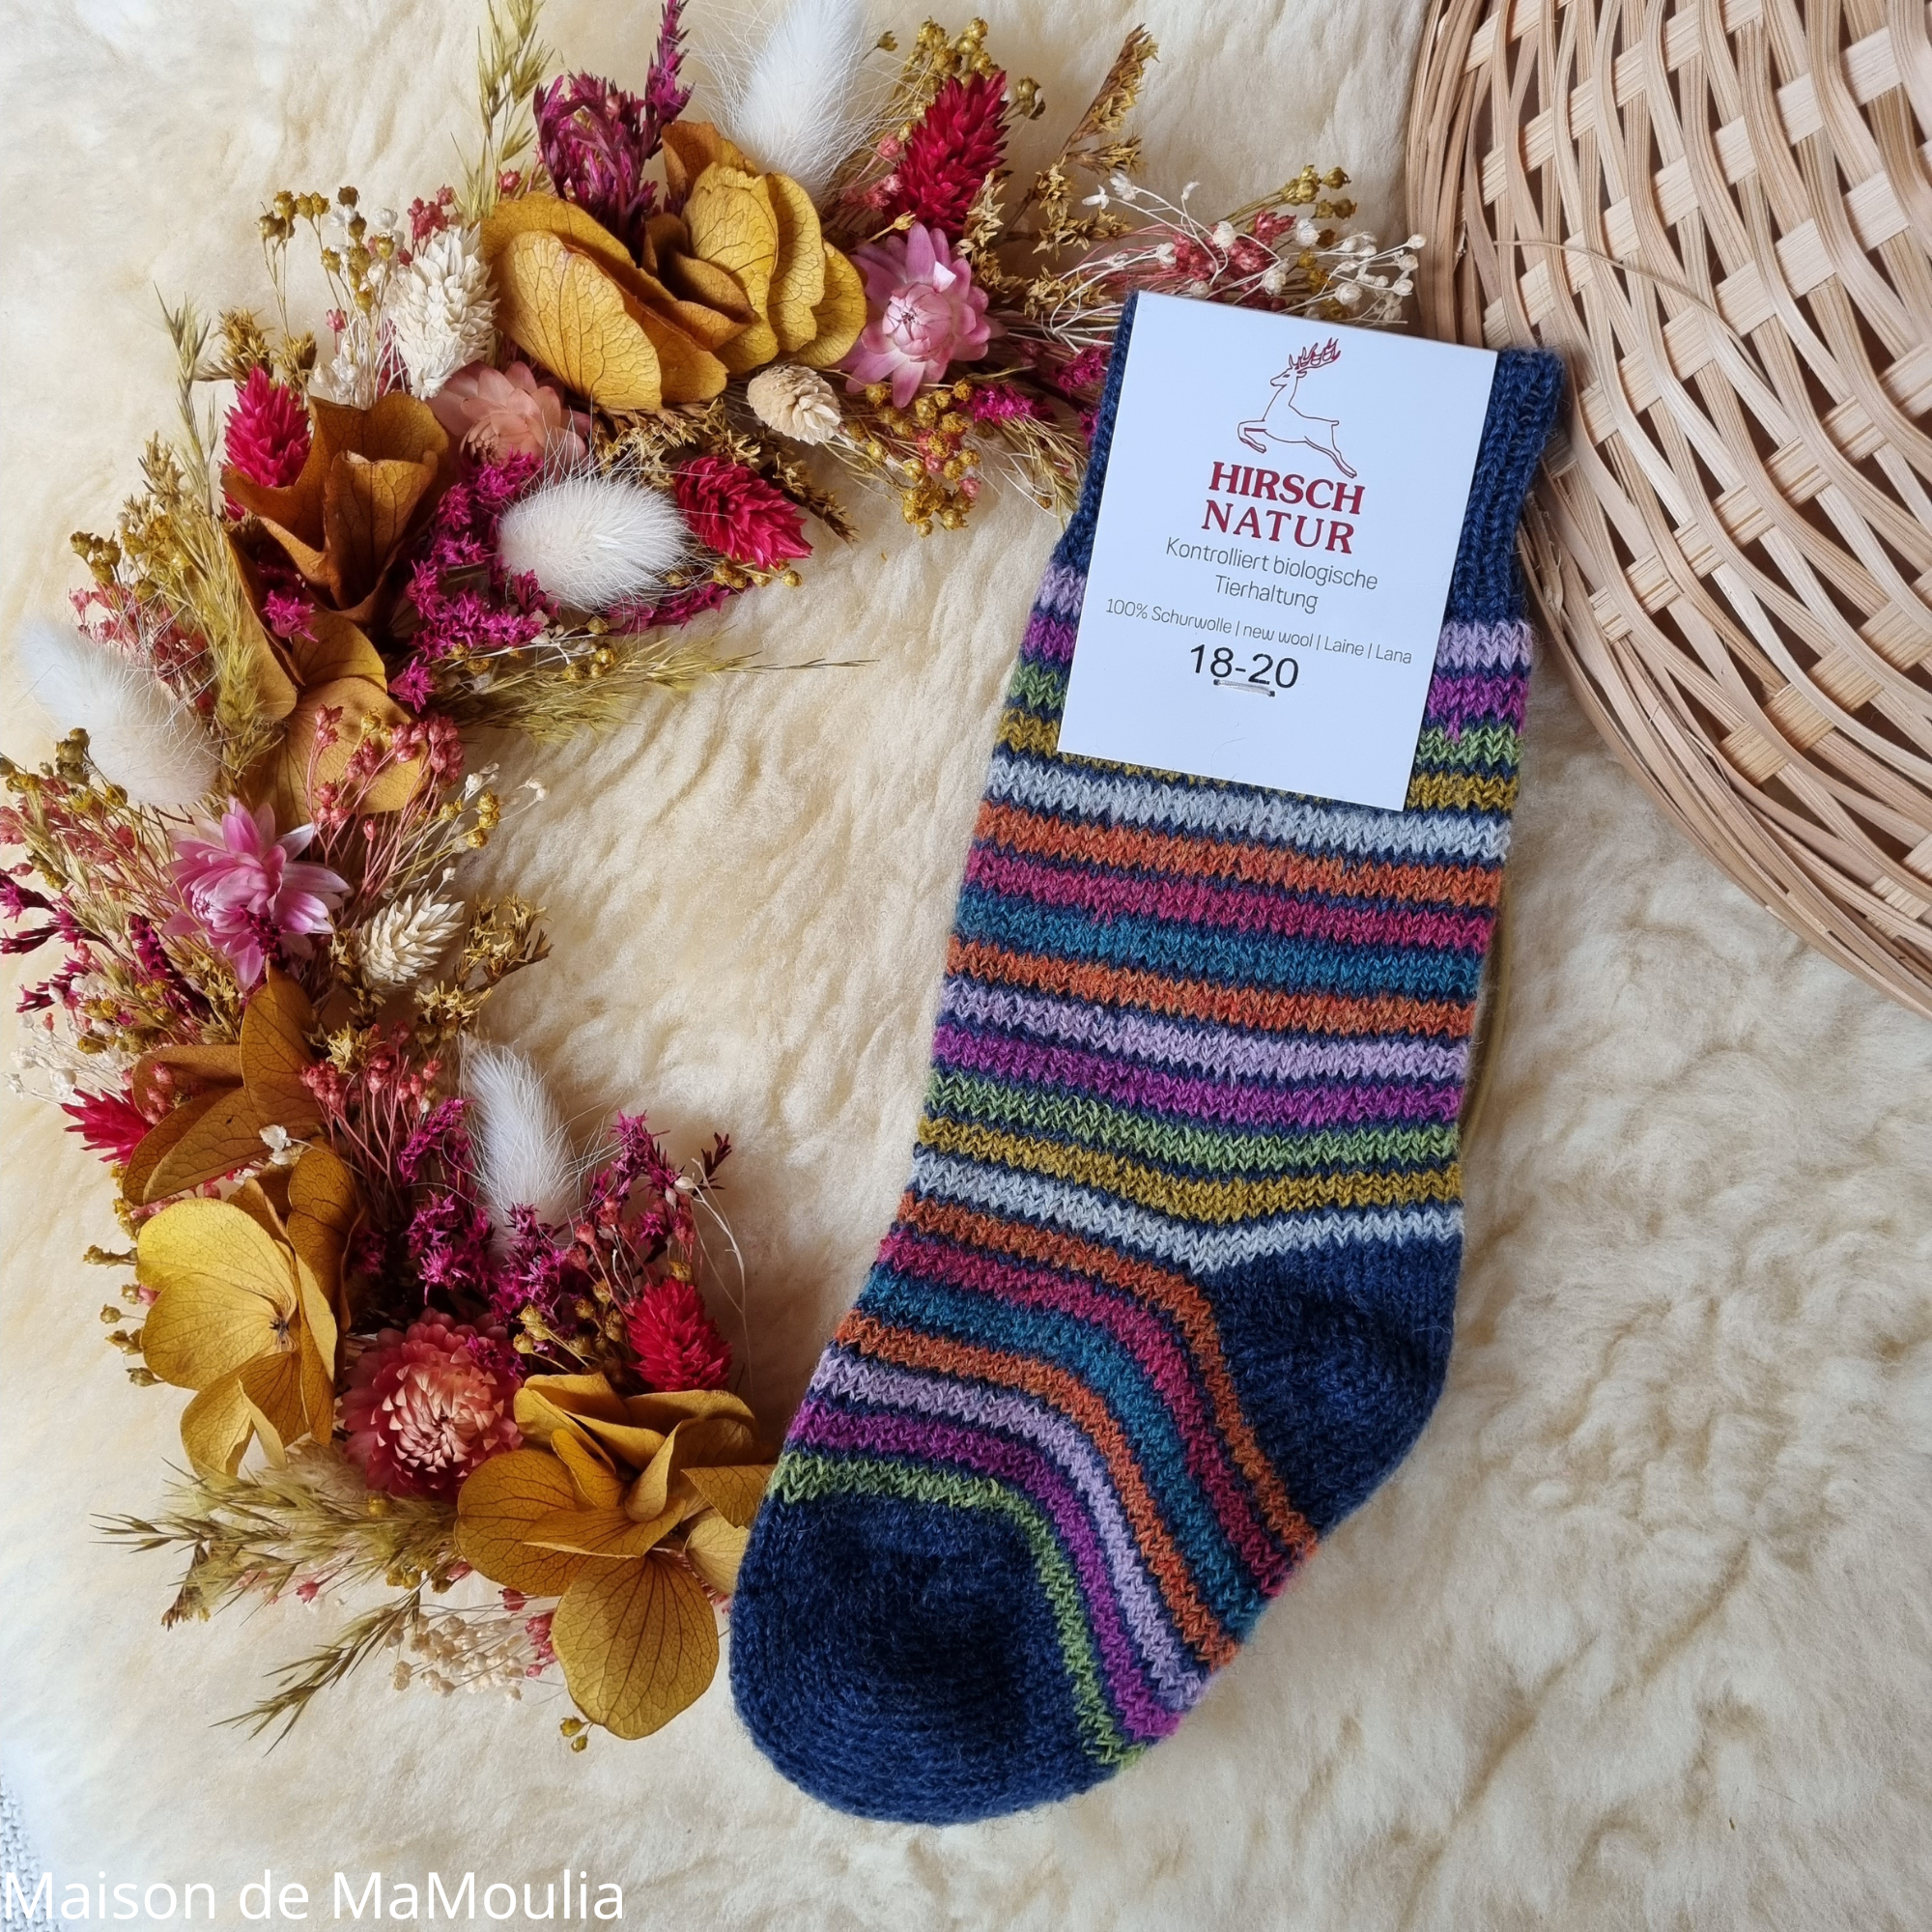 016K-chaussettes-pure-laine-bio-ecologique-hirsch-natur-maison-de-mamoulia-rayures-enfant-jean